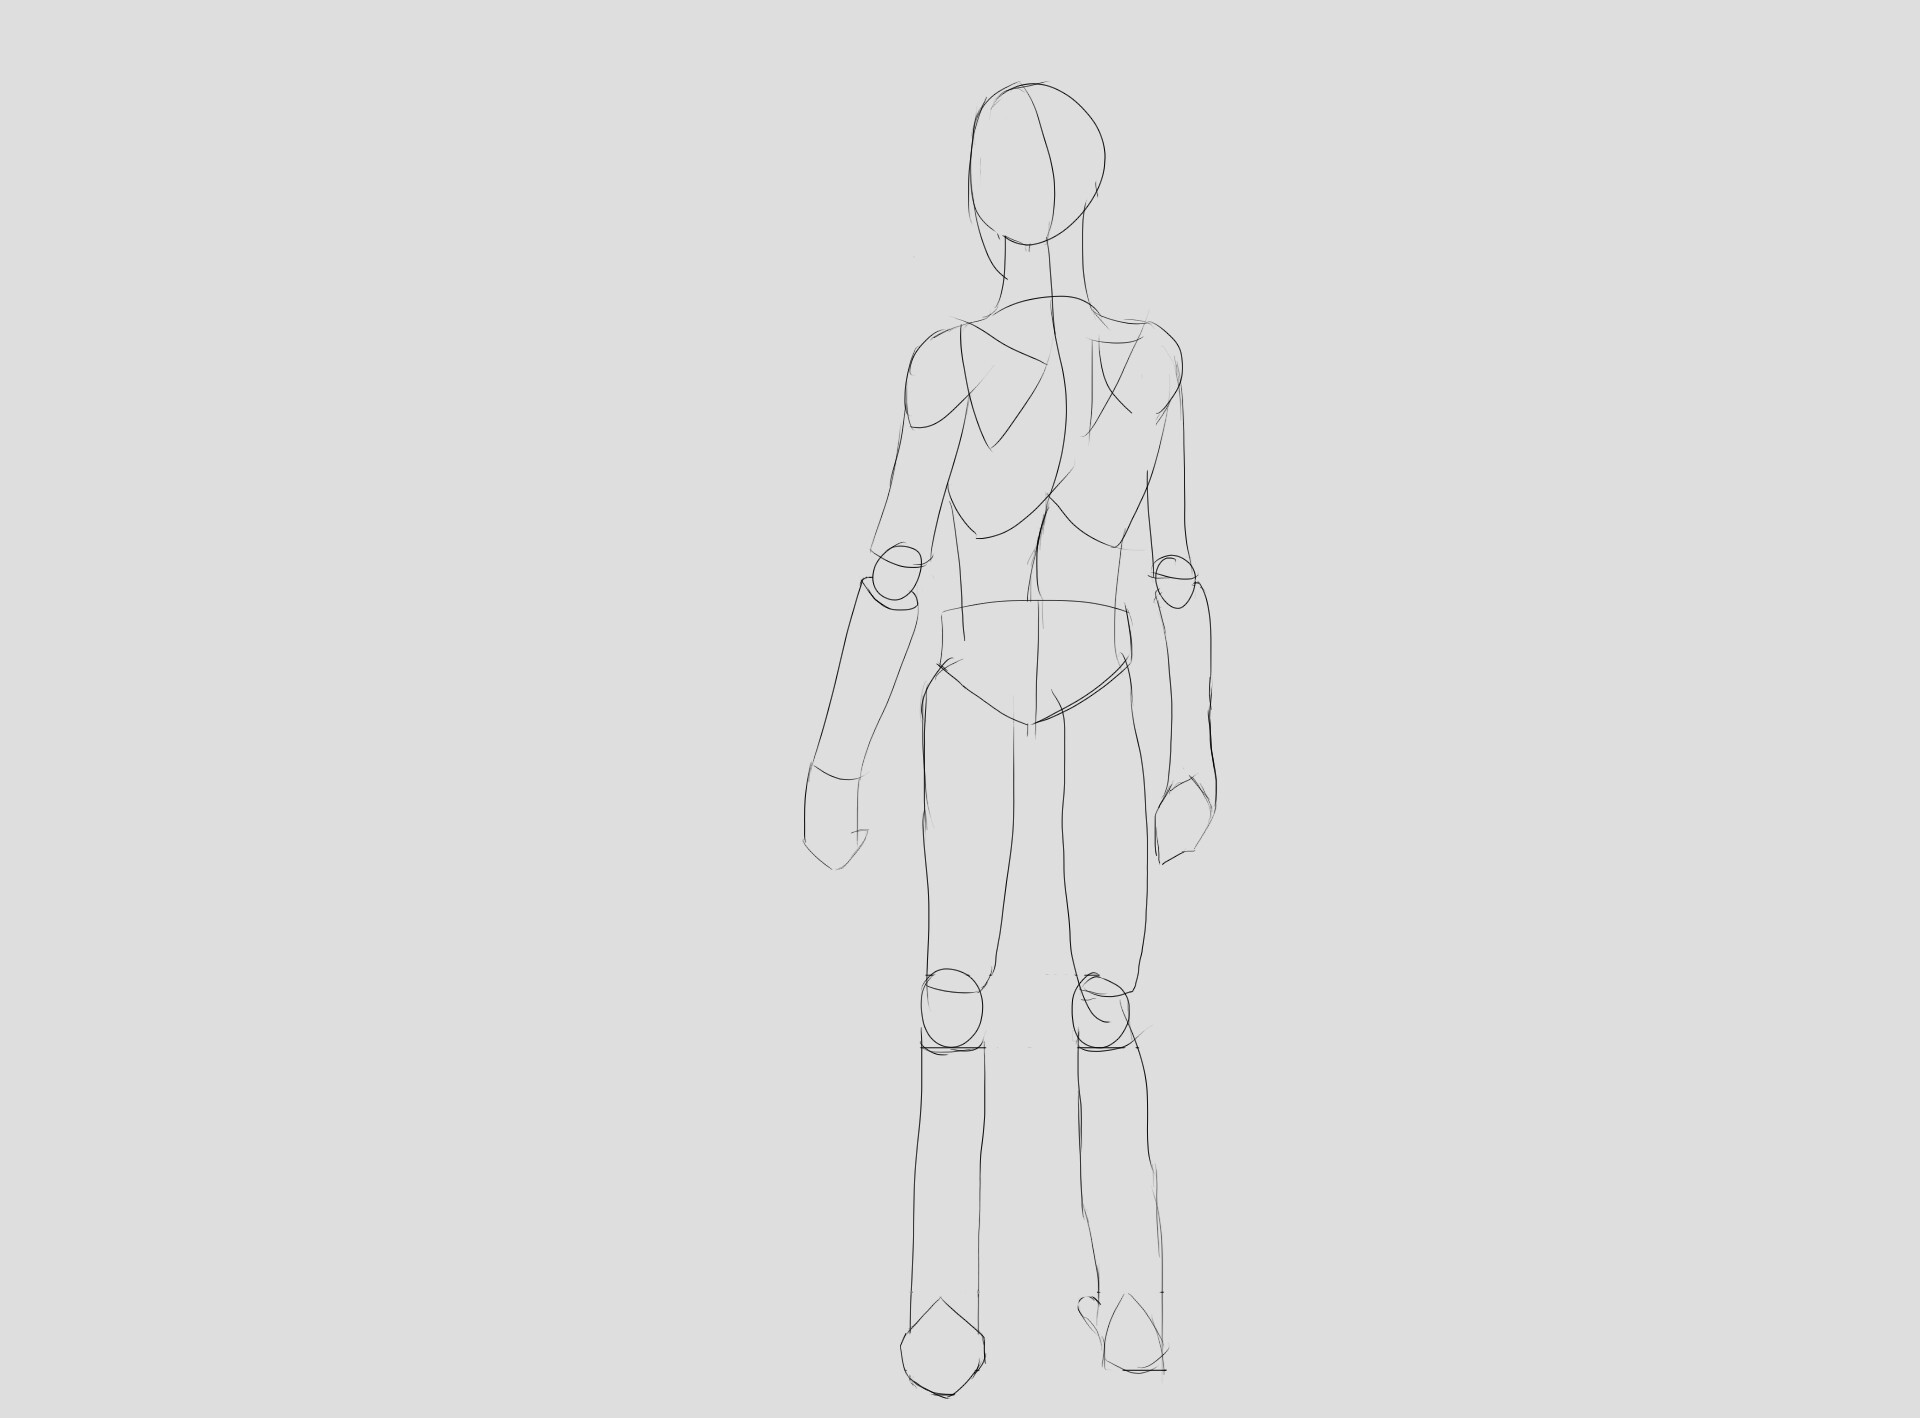 ArtStation - Female body anatomy back view